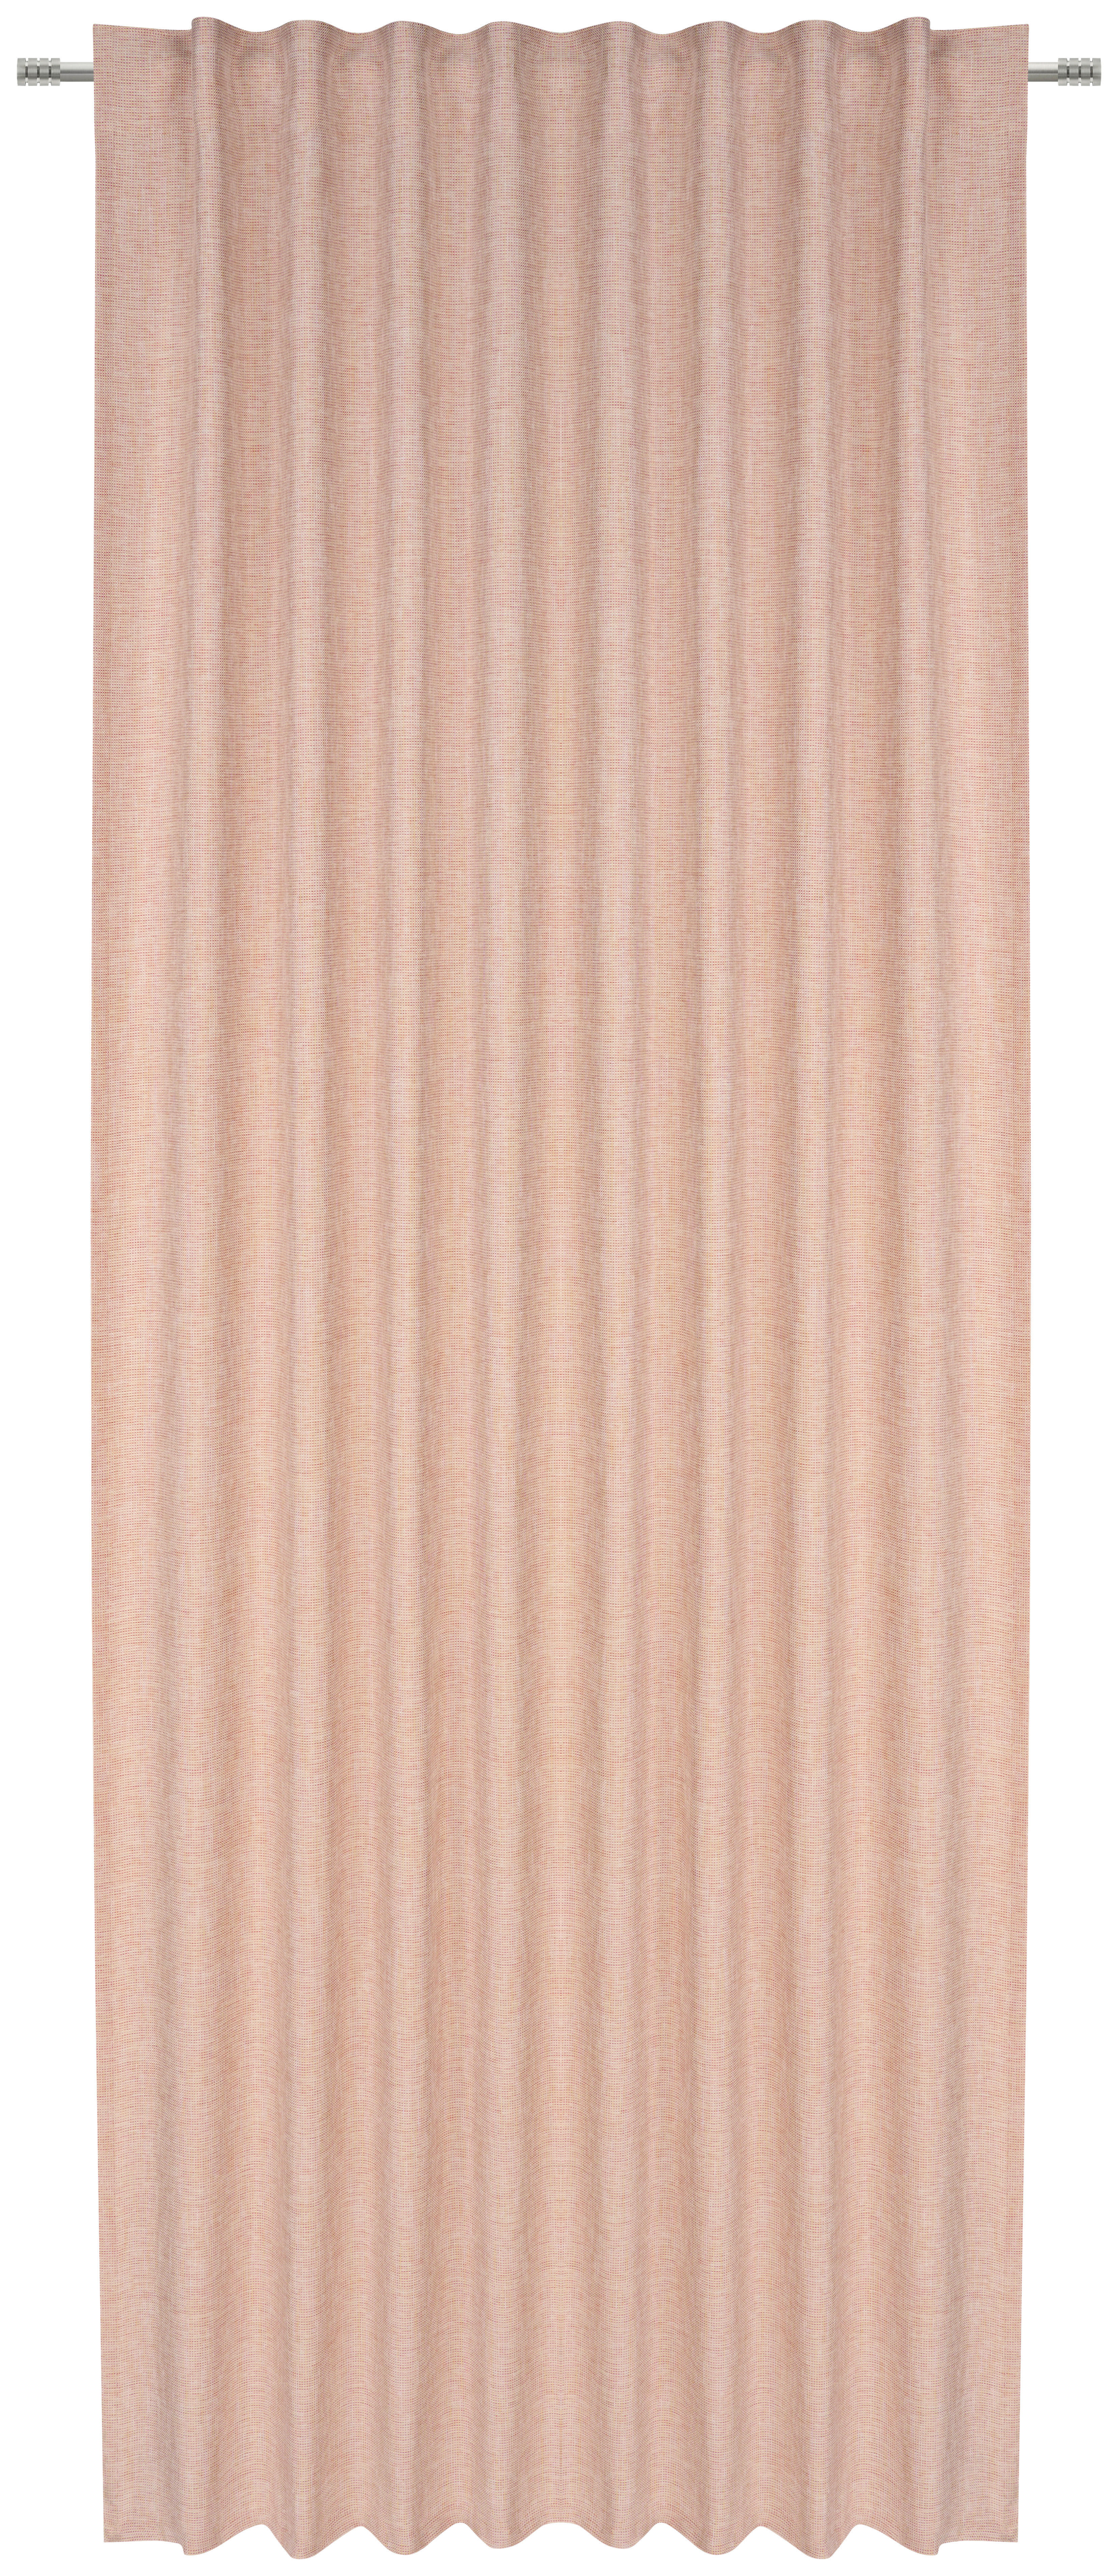 GOTOVA ZAVJESA bakrenaste boje  135/245 cm  - bakrenaste boje, Basics, tekstil (135/245cm) - Esposa